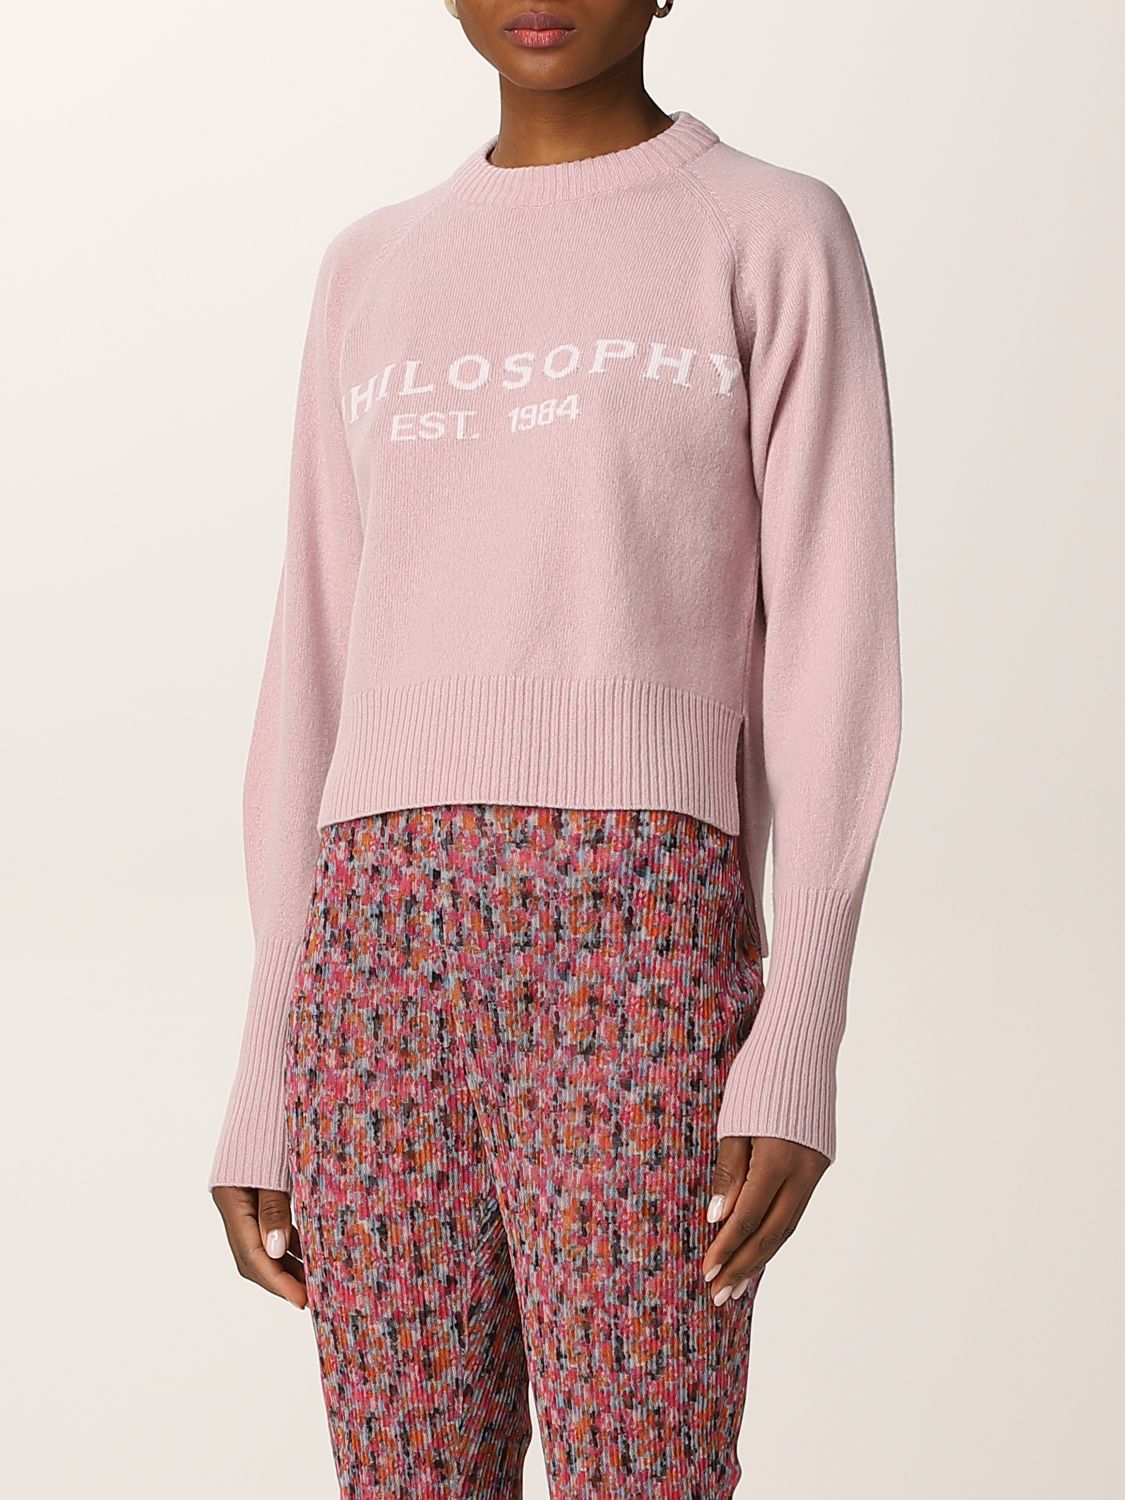 Sweater Philosophy Di Lorenzo Serafini: Philosophy Di Lorenzo Serafini sweater with logo pink 4